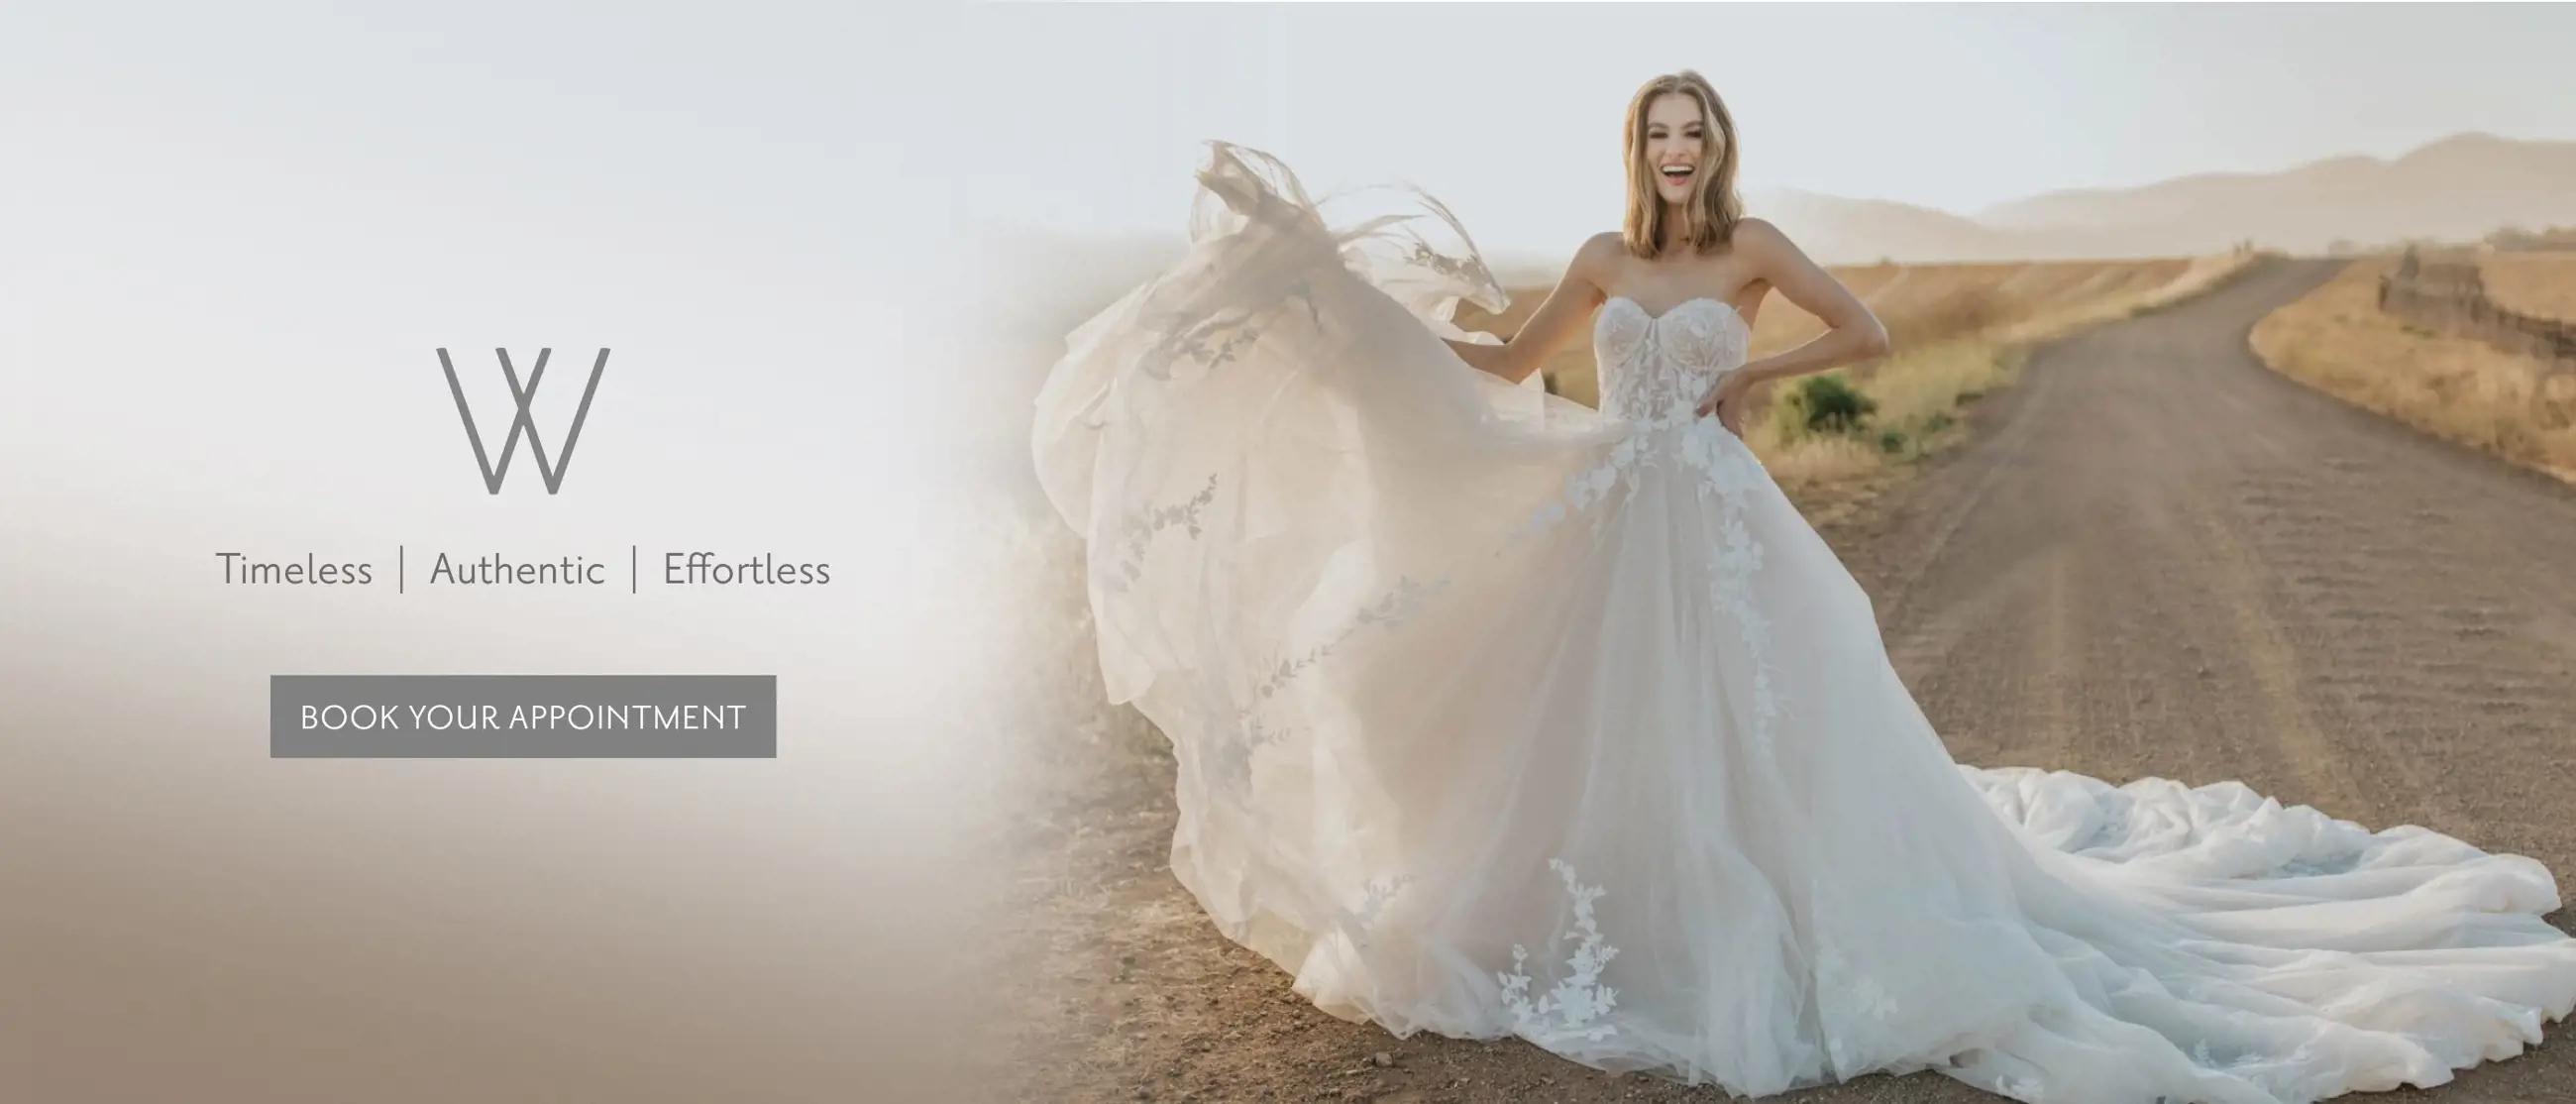 White Dress Bridal Boutique